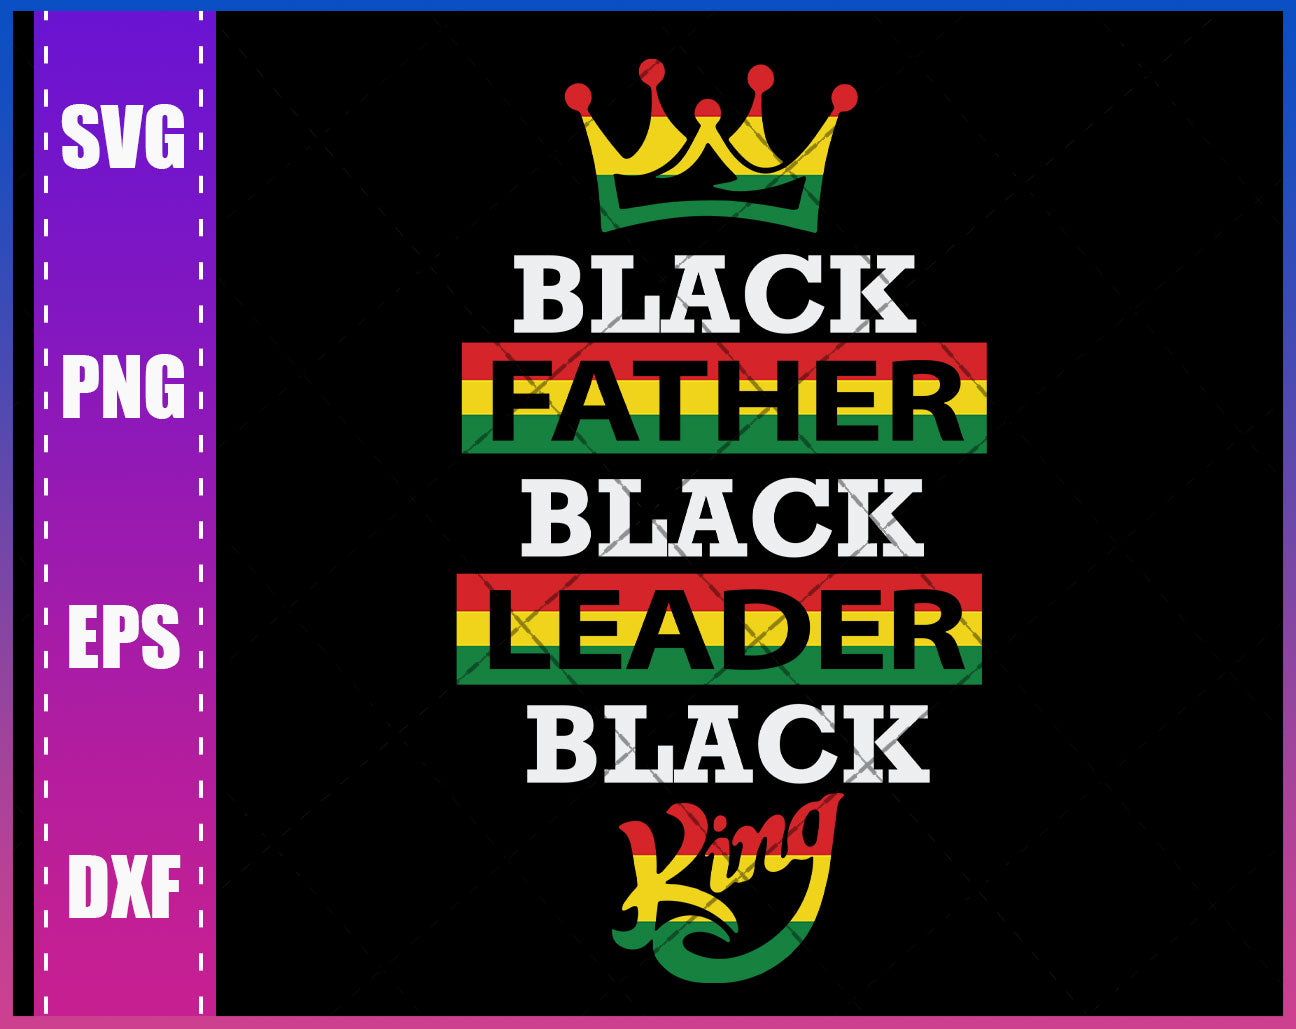 Download Black Father Svg Black Leader Svg Black King Png Father Svg Dad Sv Waikenz